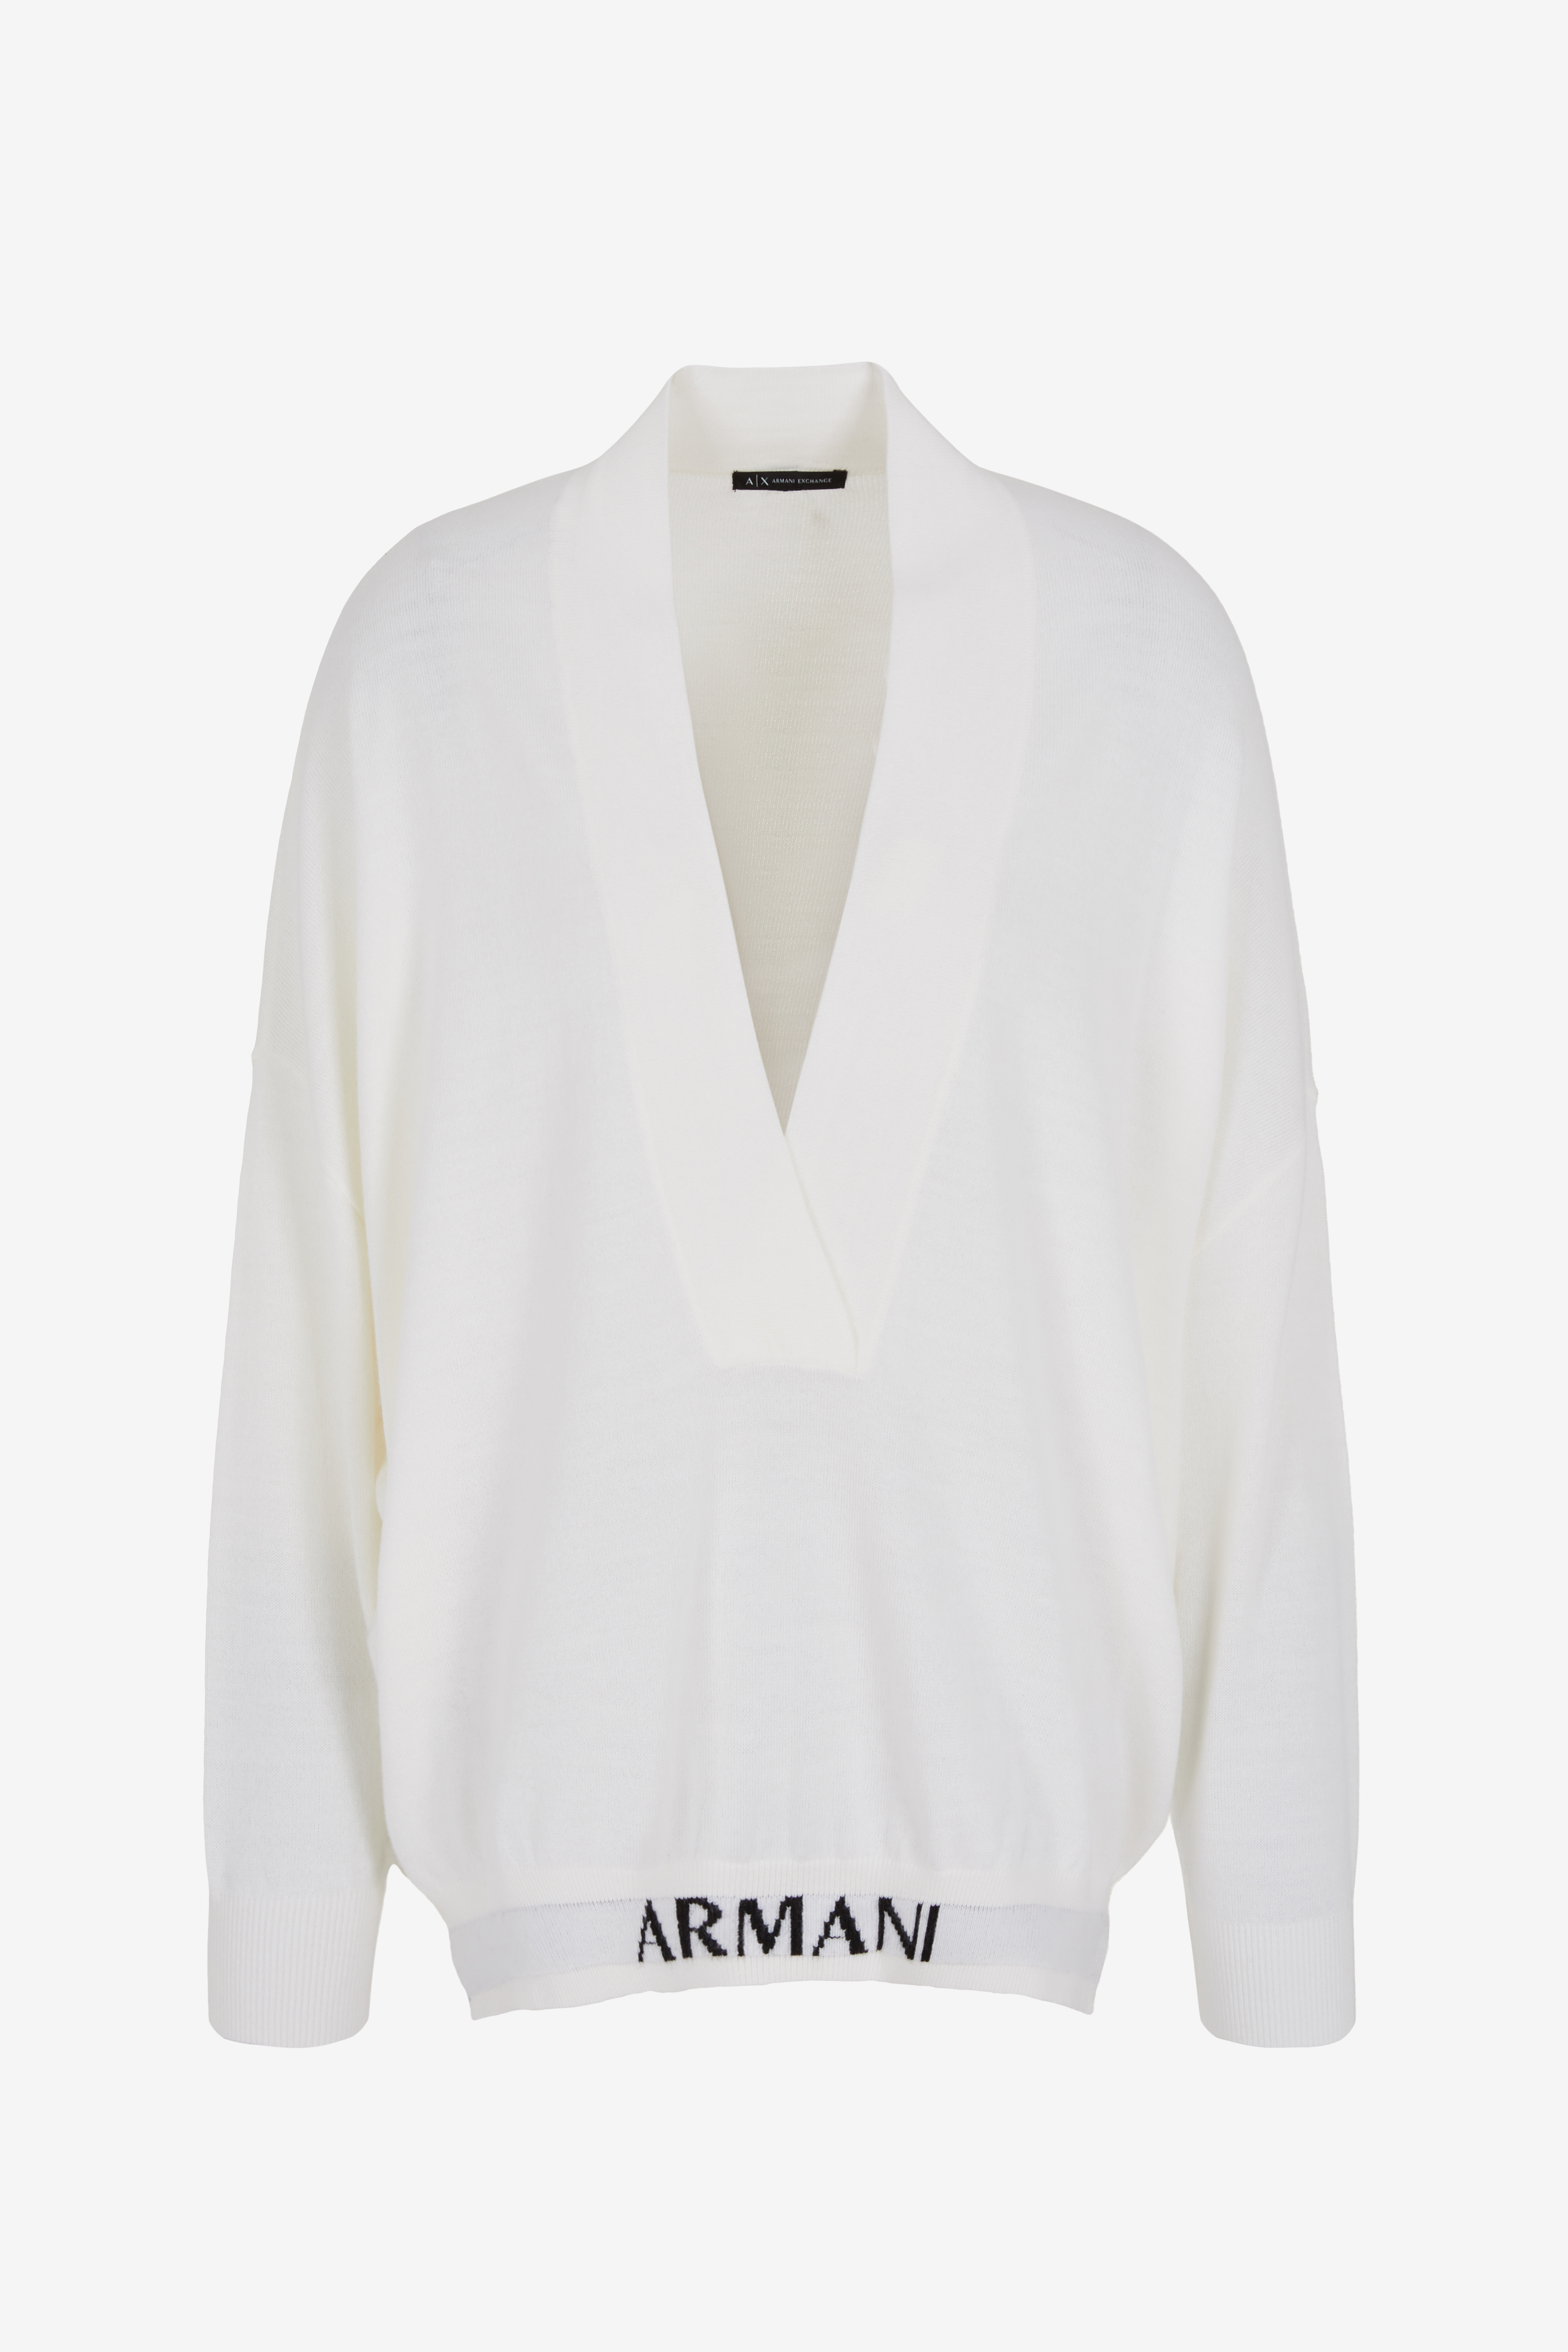 ARMANI  6RYM1L YME3Z Damen Pullover mit Wording V-Ausschnitt Woll-Mix  ISO